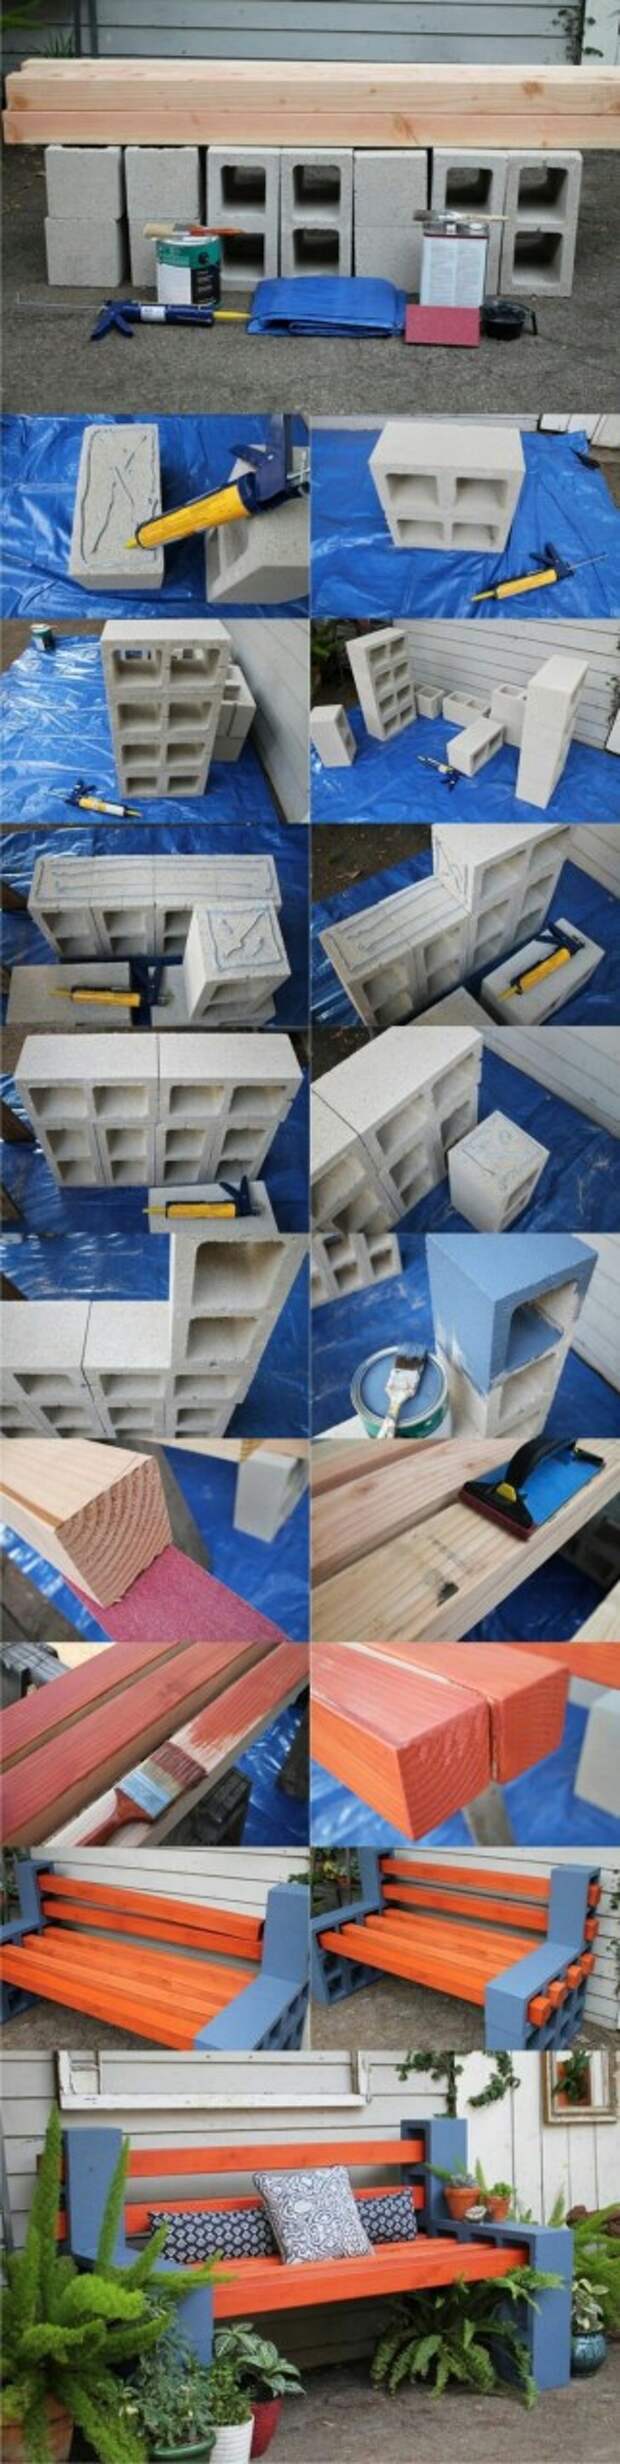 Идея на дачу pinterest, скамейки, бетонные блоки, дизайн, длиннопост